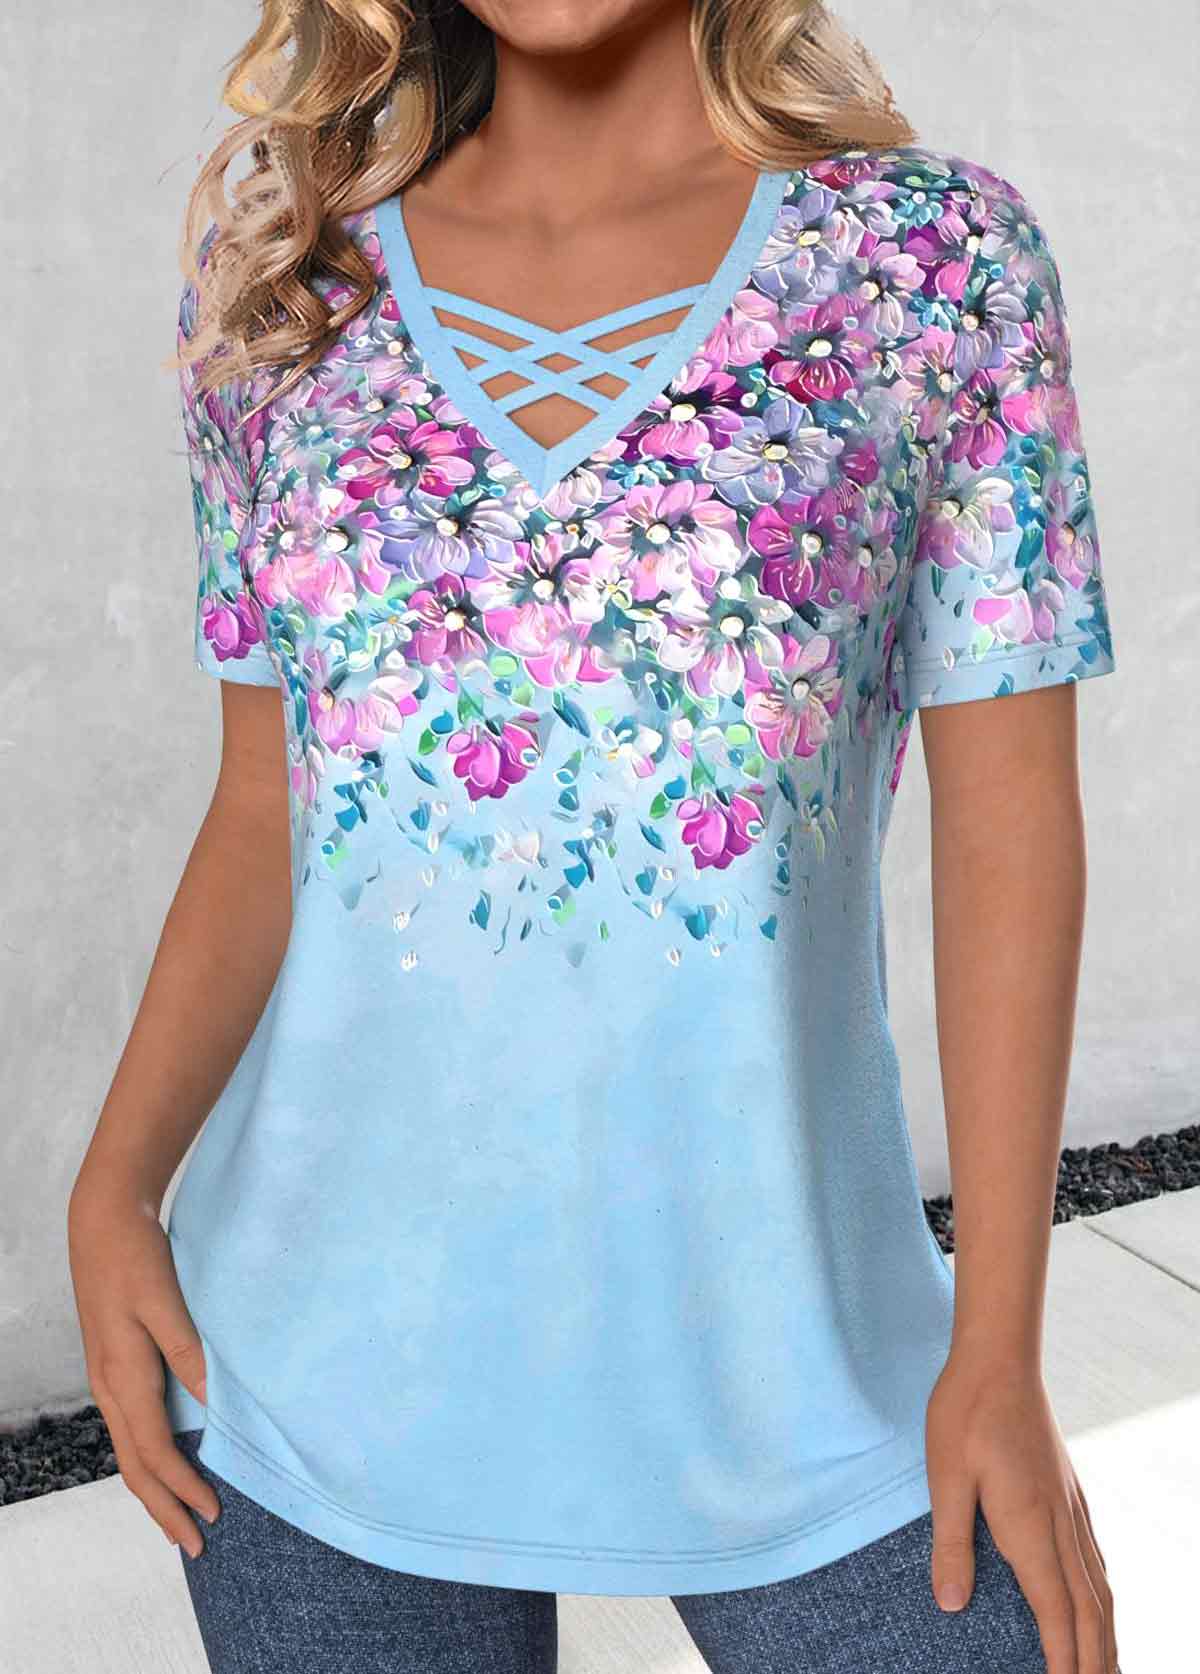 Floral Print Criss Cross Light Blue T Shirt